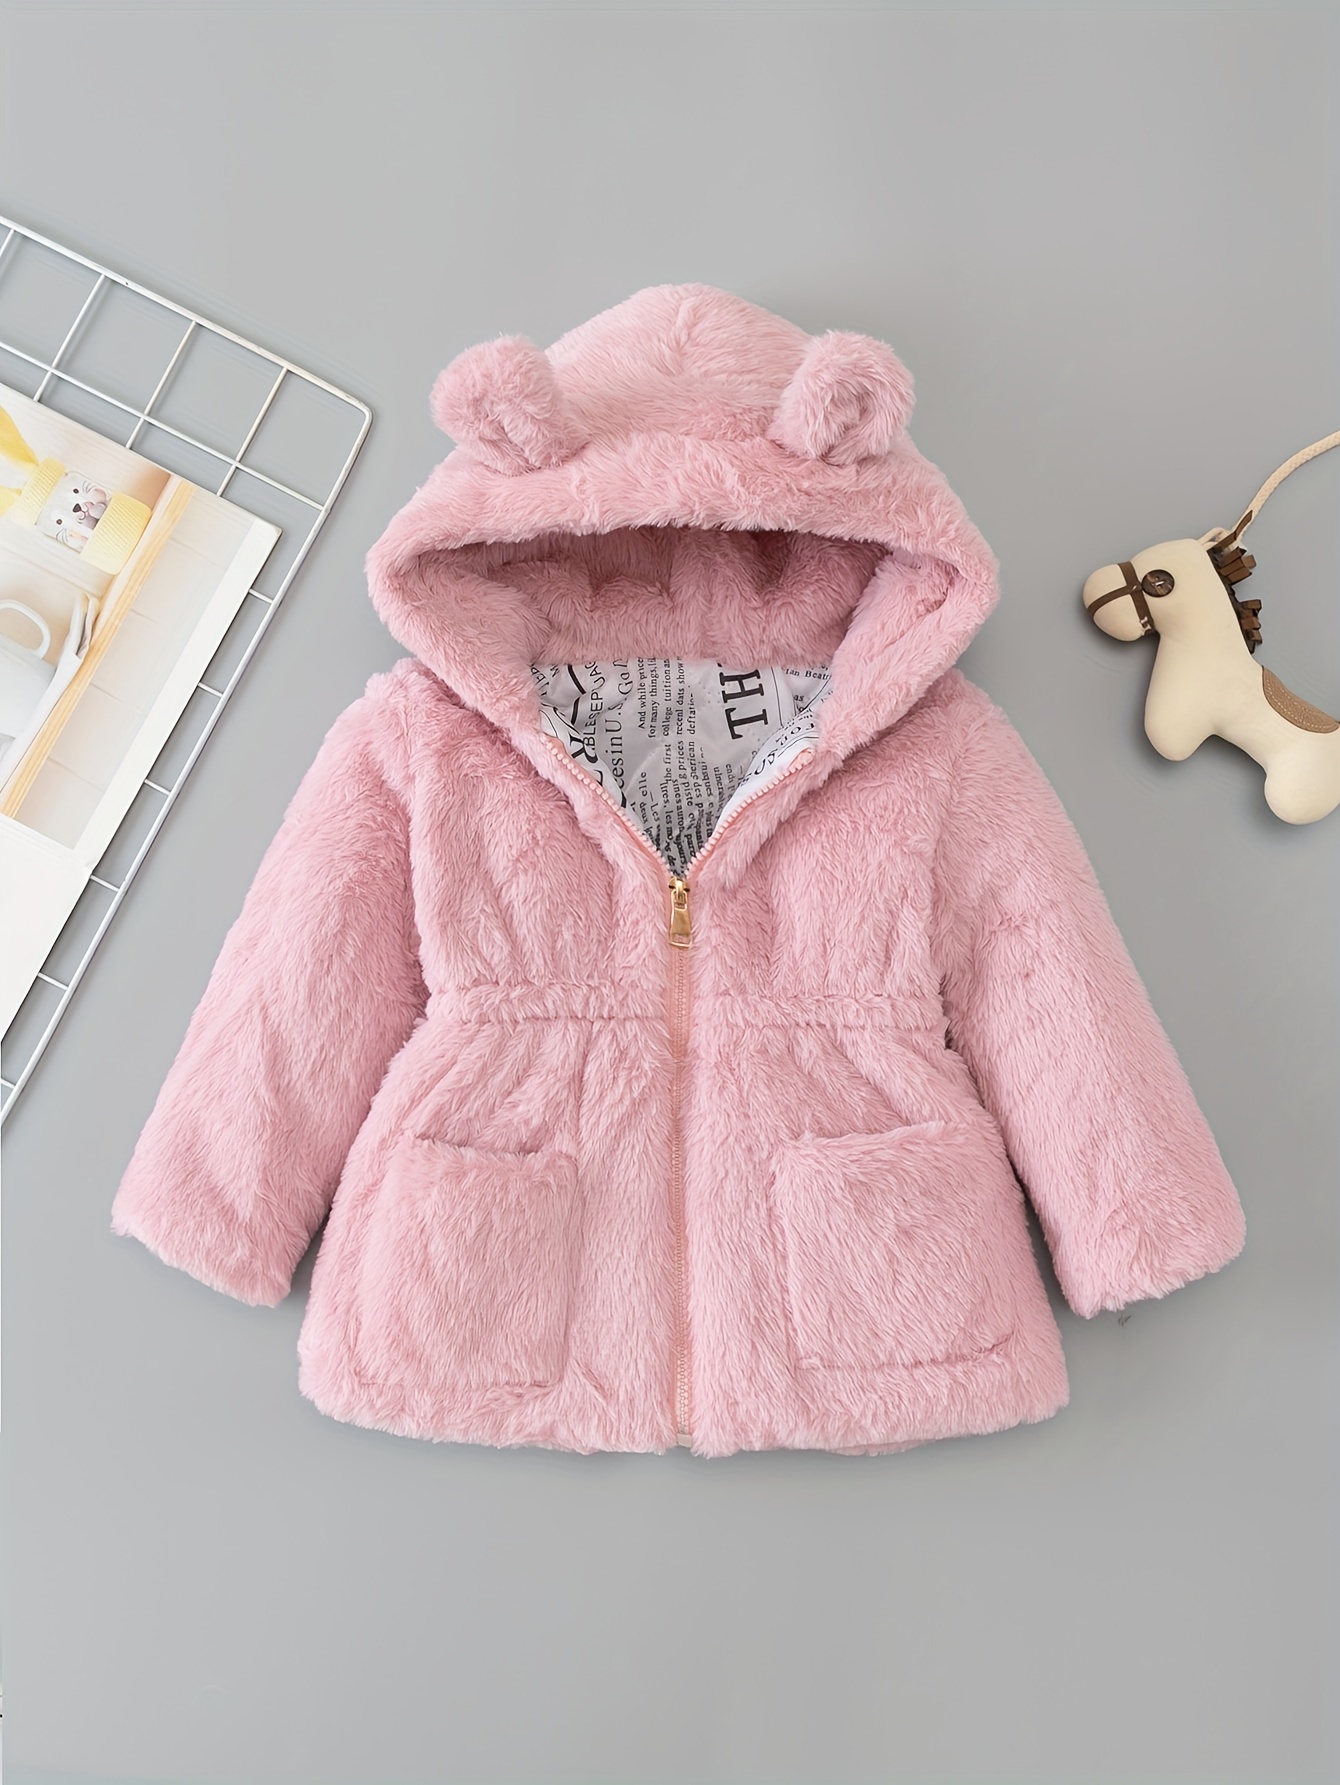 Chaqueta de forro polar para niño, abrigo cálido con orejas lindas con  capucha para bebé y niños, ropa exterior gruesa con cremallera de forro  polar